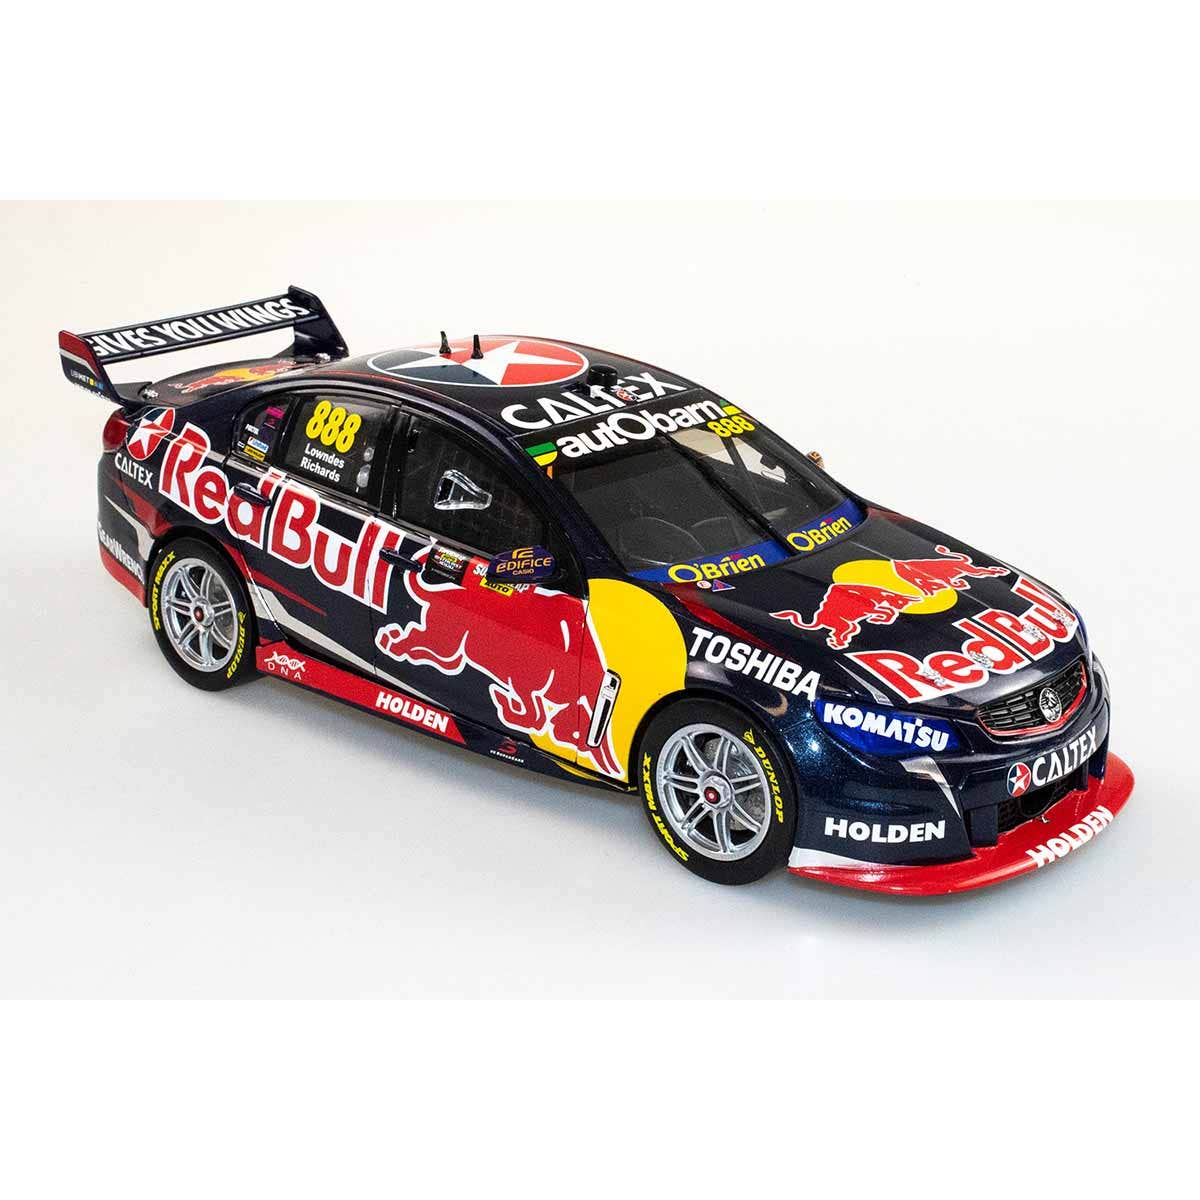 HOLDEN VF COMMODORE V8 - RED BULL RACING AUSTRALIA - LOWNDES/RICHARDS #888 - 2015 BATHURST 1000 WINNER - 1:43 Scale Diecast Model Car